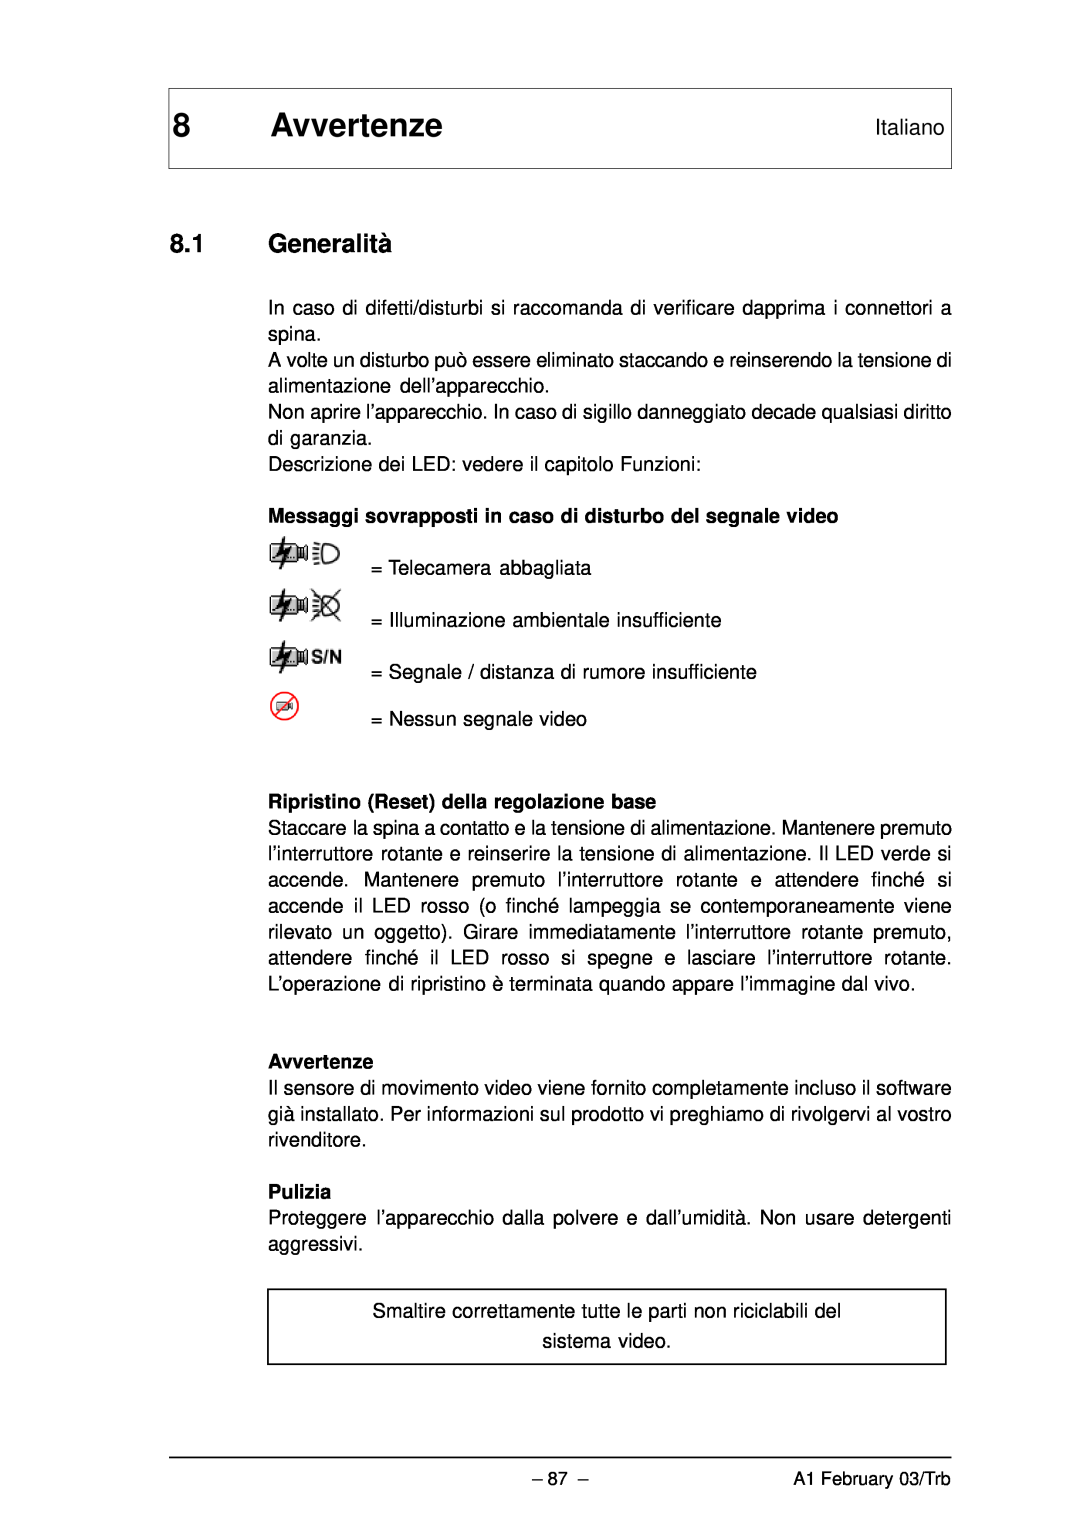 Bosch Appliances VMD01 M50 PAL manual Avvertenze, 8.1Generalità, Italiano, Ripristino Reset della regolazione base, Pulizia 